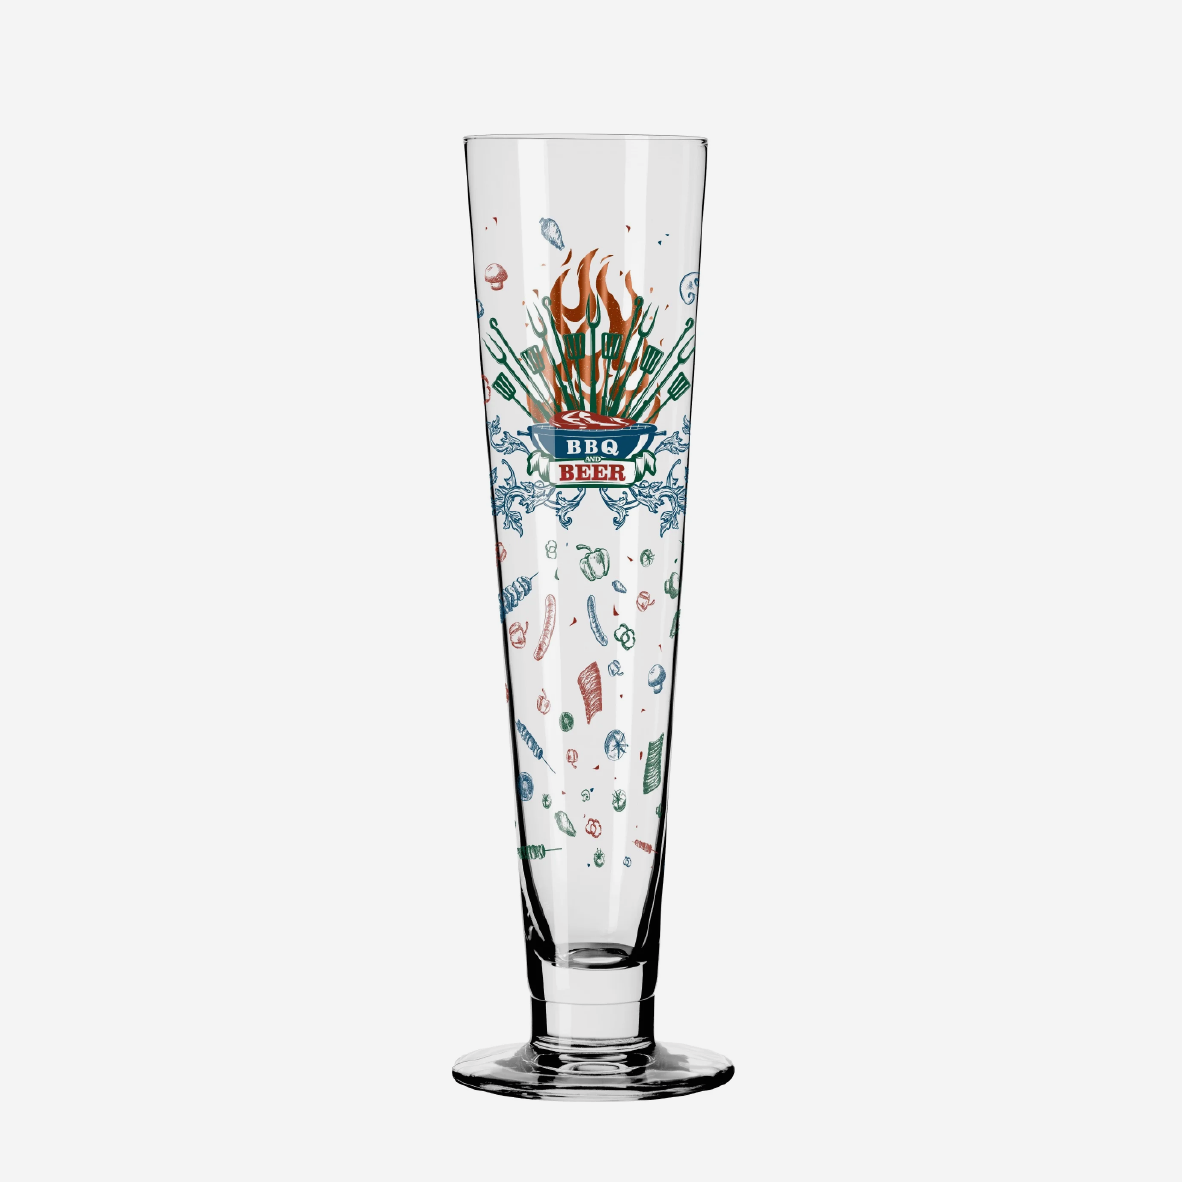 Heldenfest Beer Glass - 2Percent